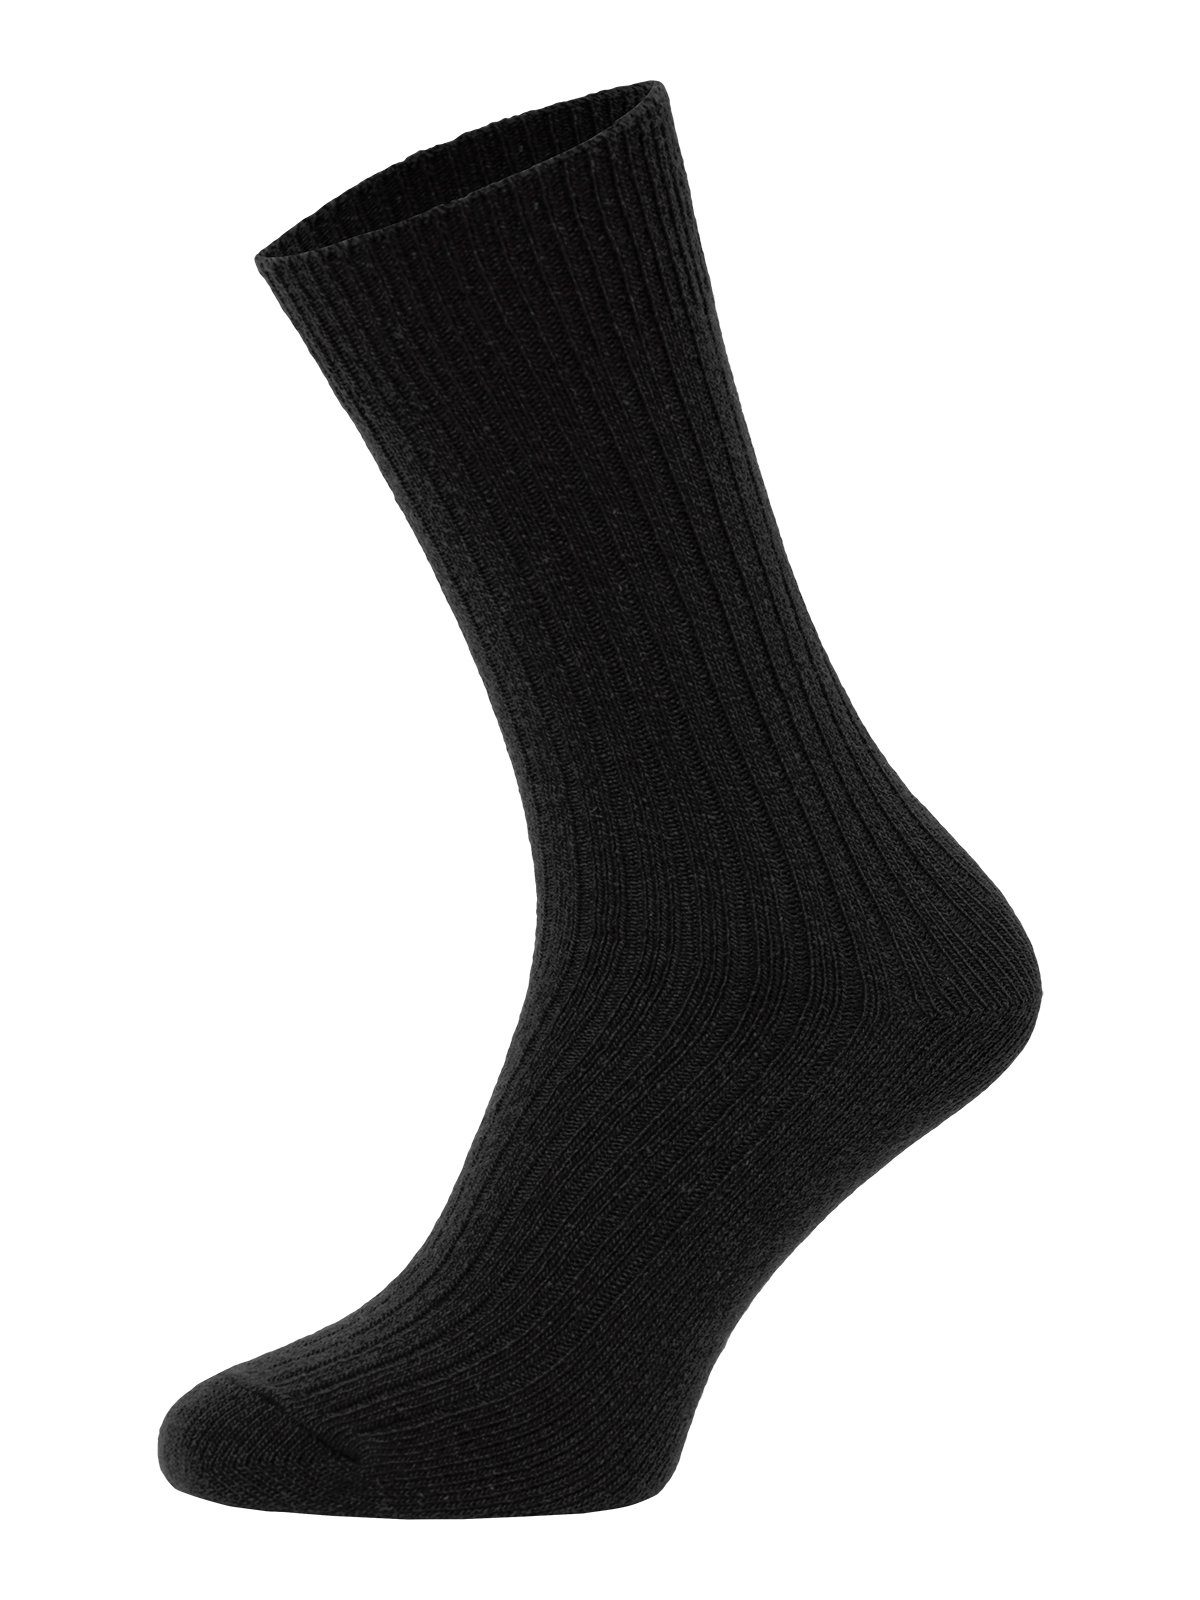 HomeOfSocks Socken Dünne Bunte Wollsocken mit 72% Wollanteil Hochwertige Uni Wollsocken Dünn Bunt Druckarm Schwarz